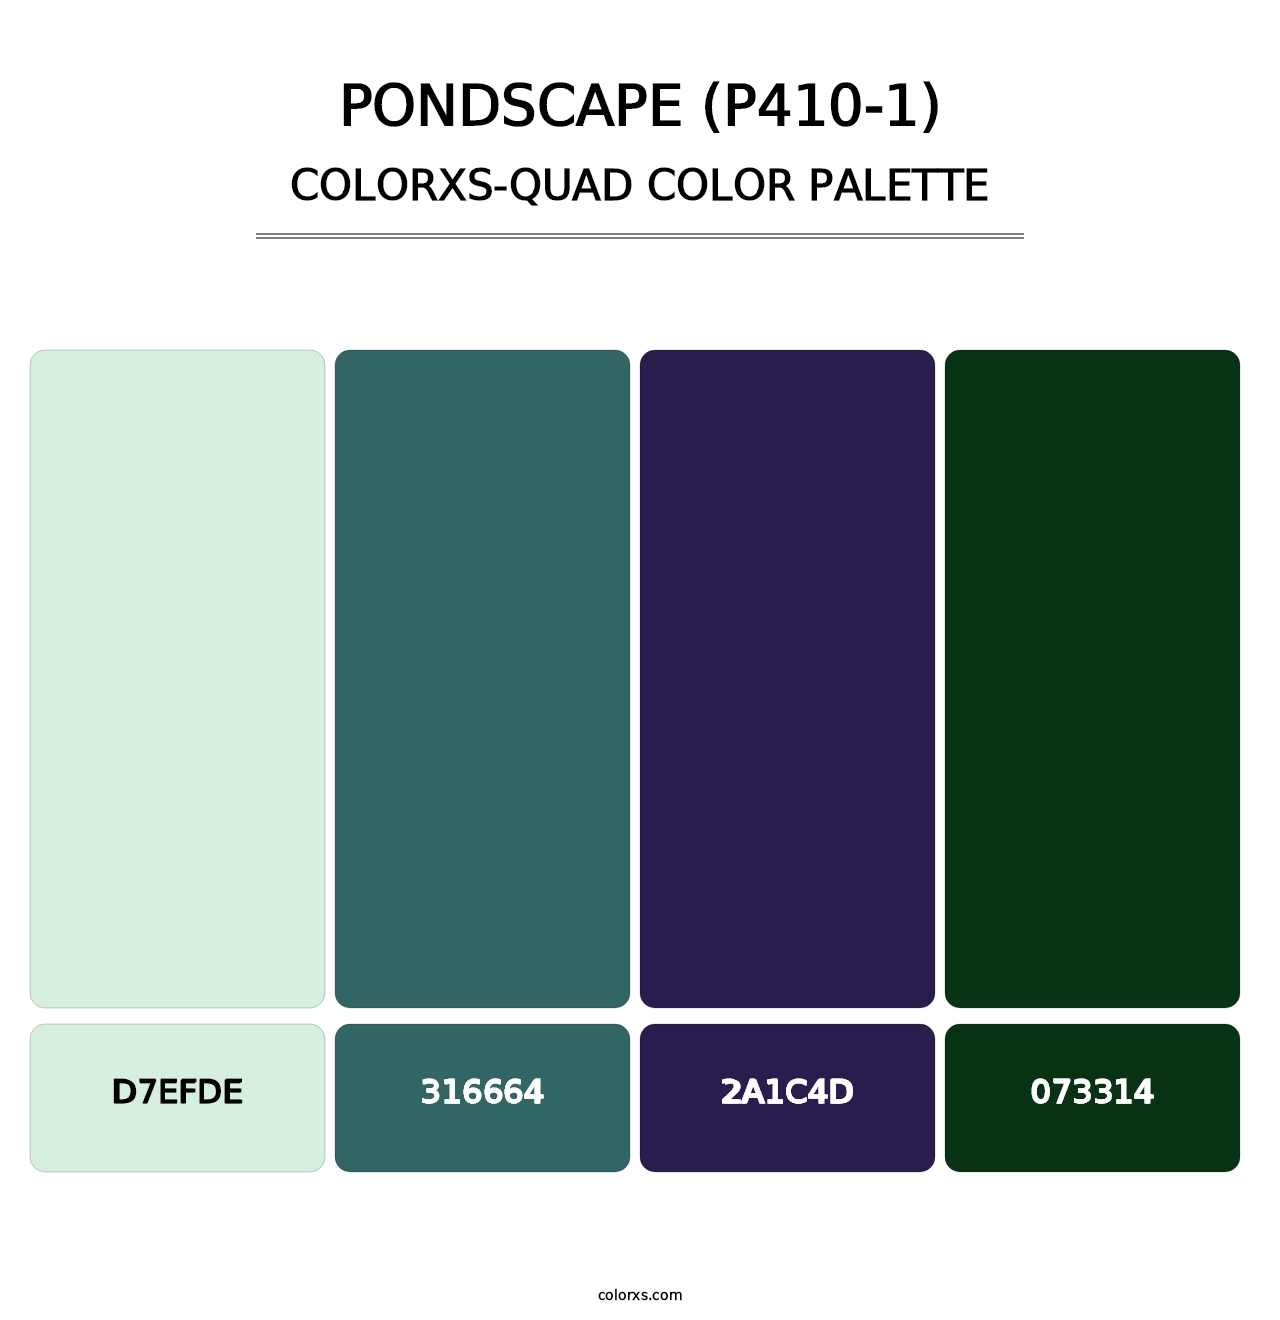 Pondscape (P410-1) - Colorxs Quad Palette